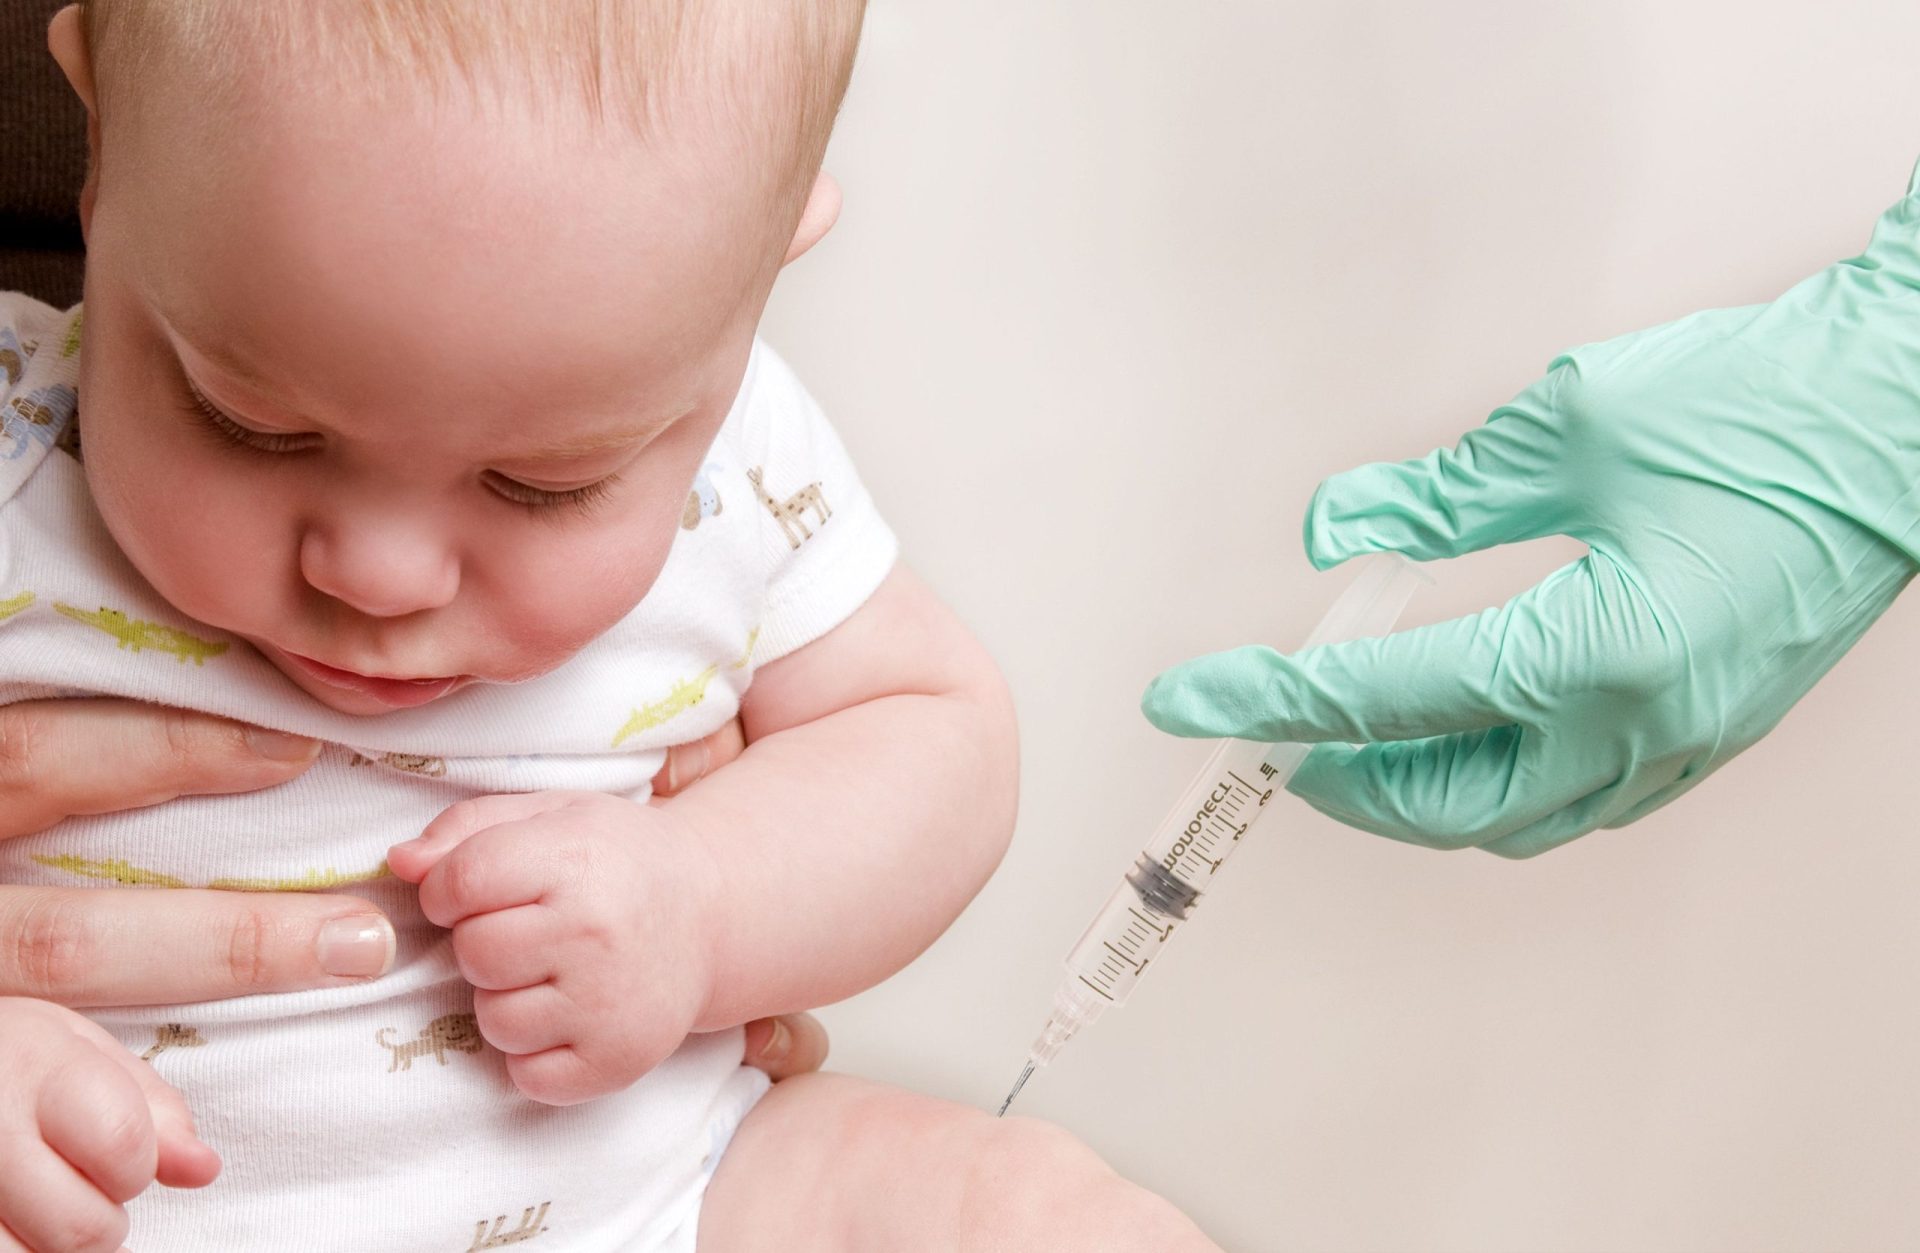 Petição por vacinas obrigatórias já foi entregue no parlamento